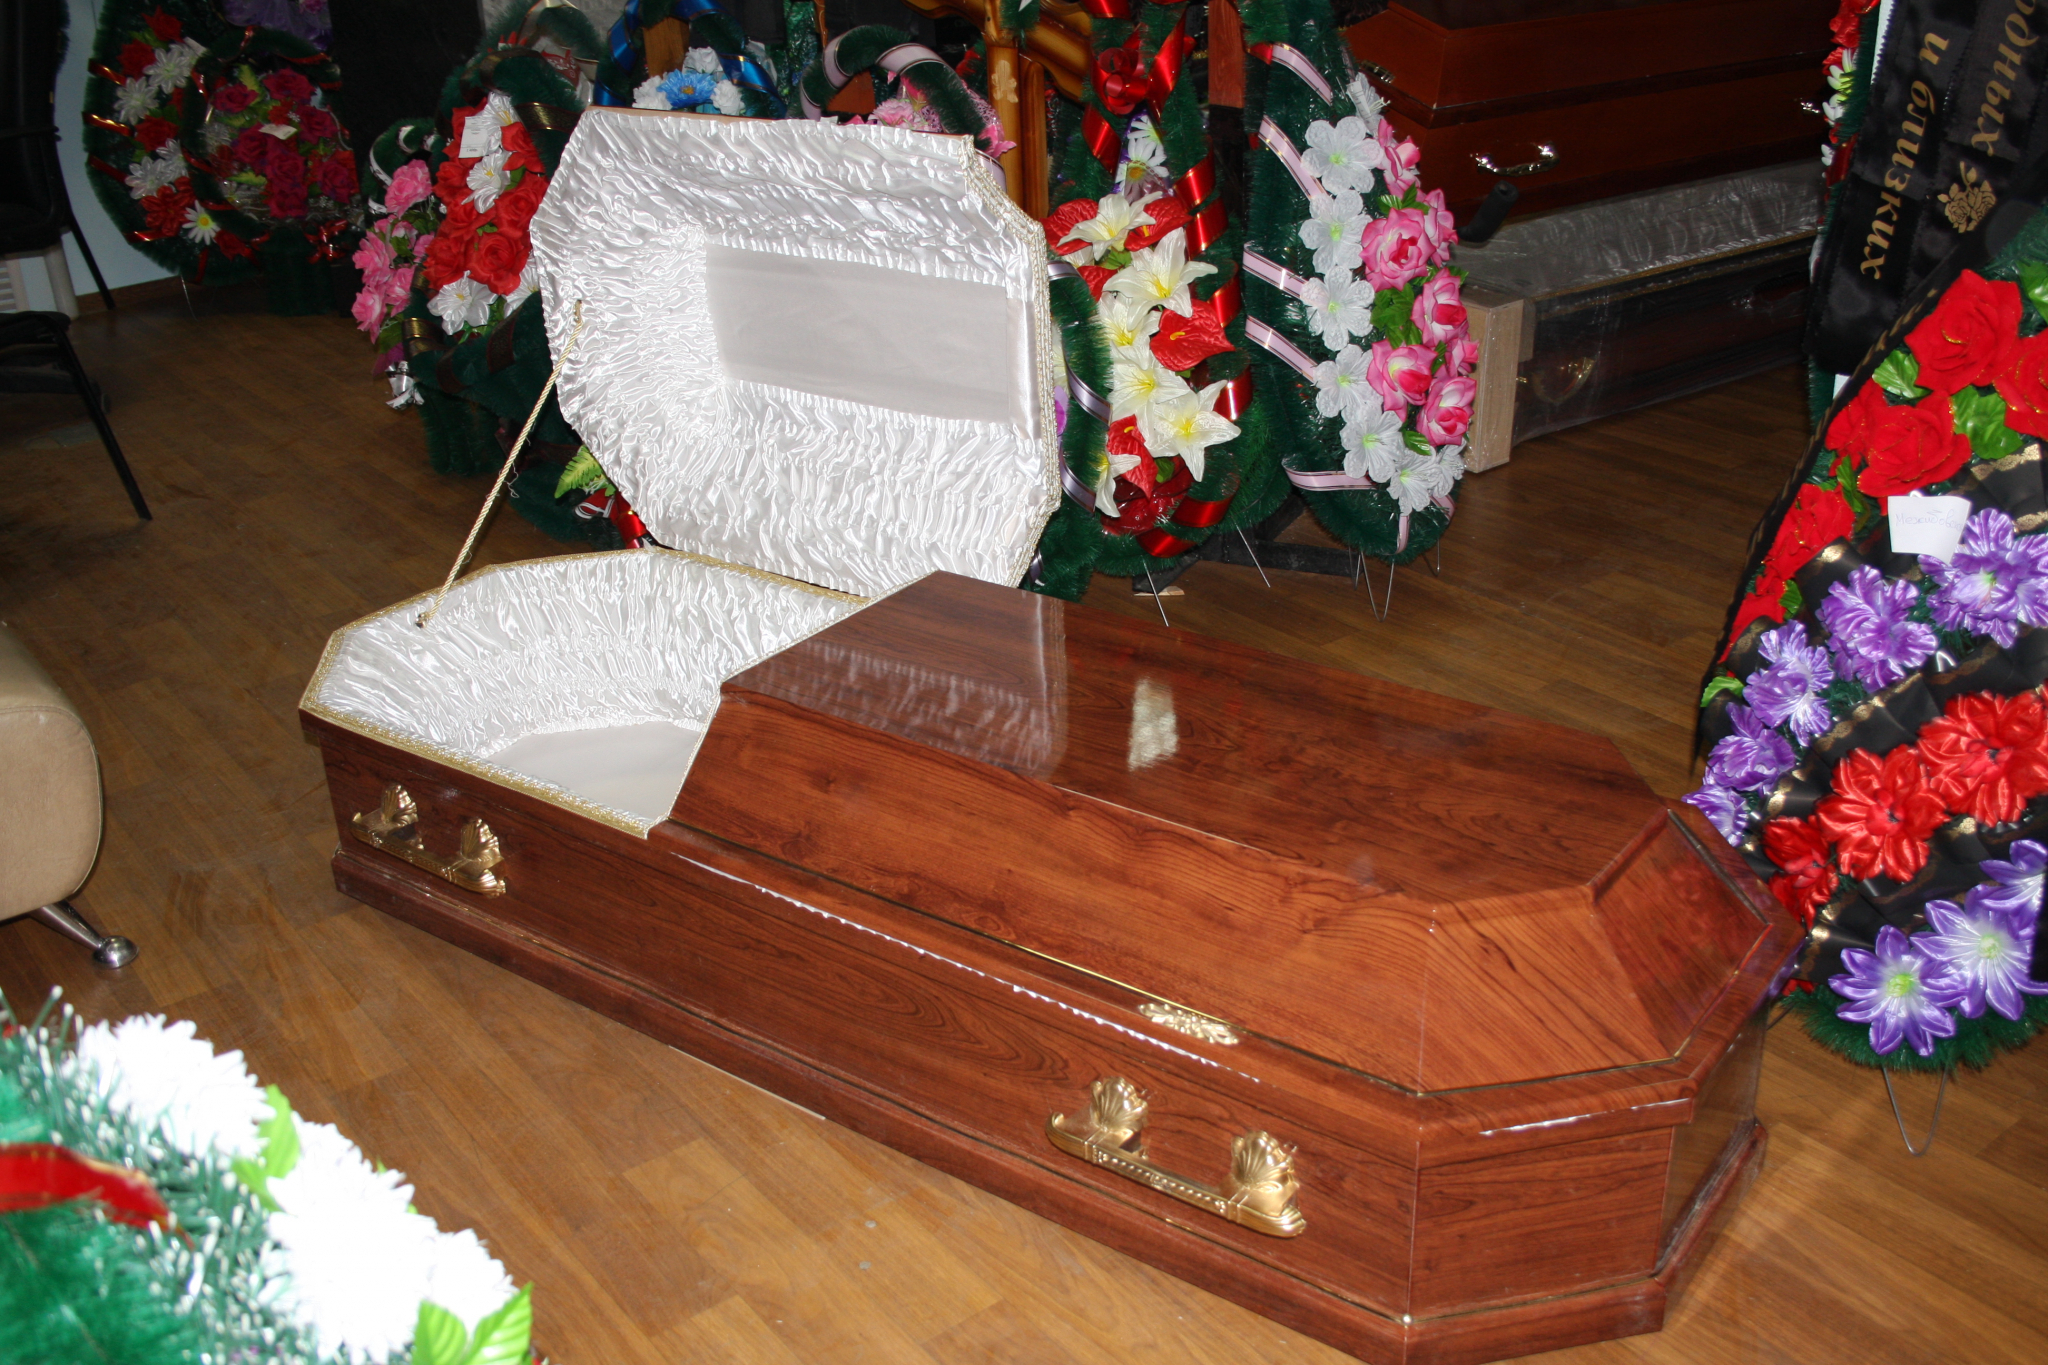 Вместо похорон нижегородцу пришлось искать пропавшее из морга тело бабушки (ВИДЕО)